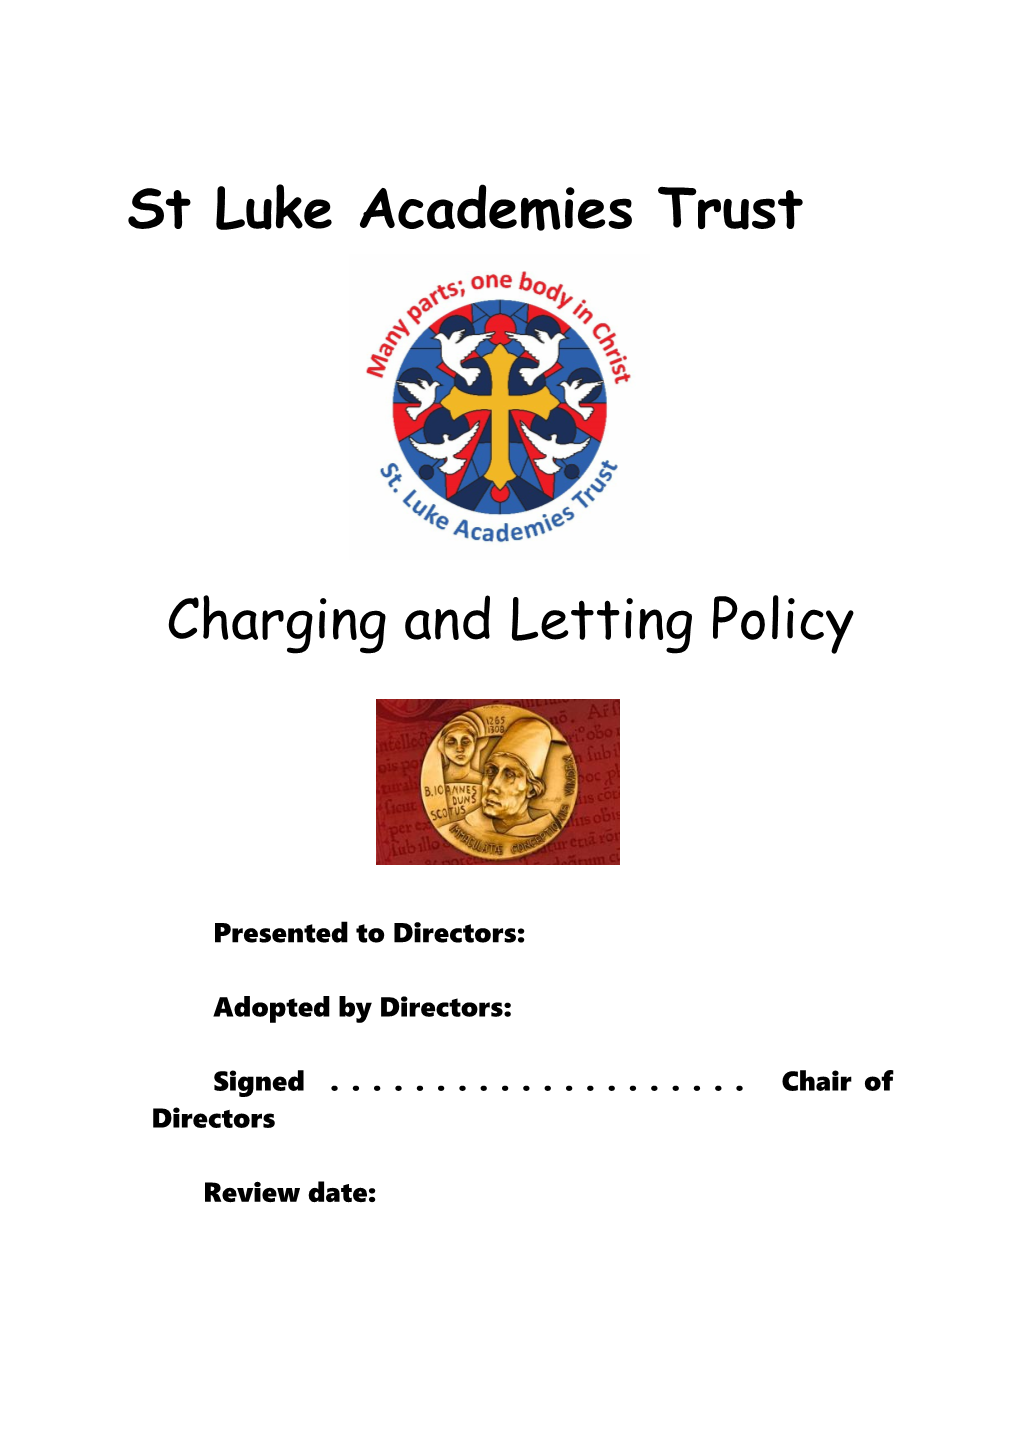 St Luke Academies Trust